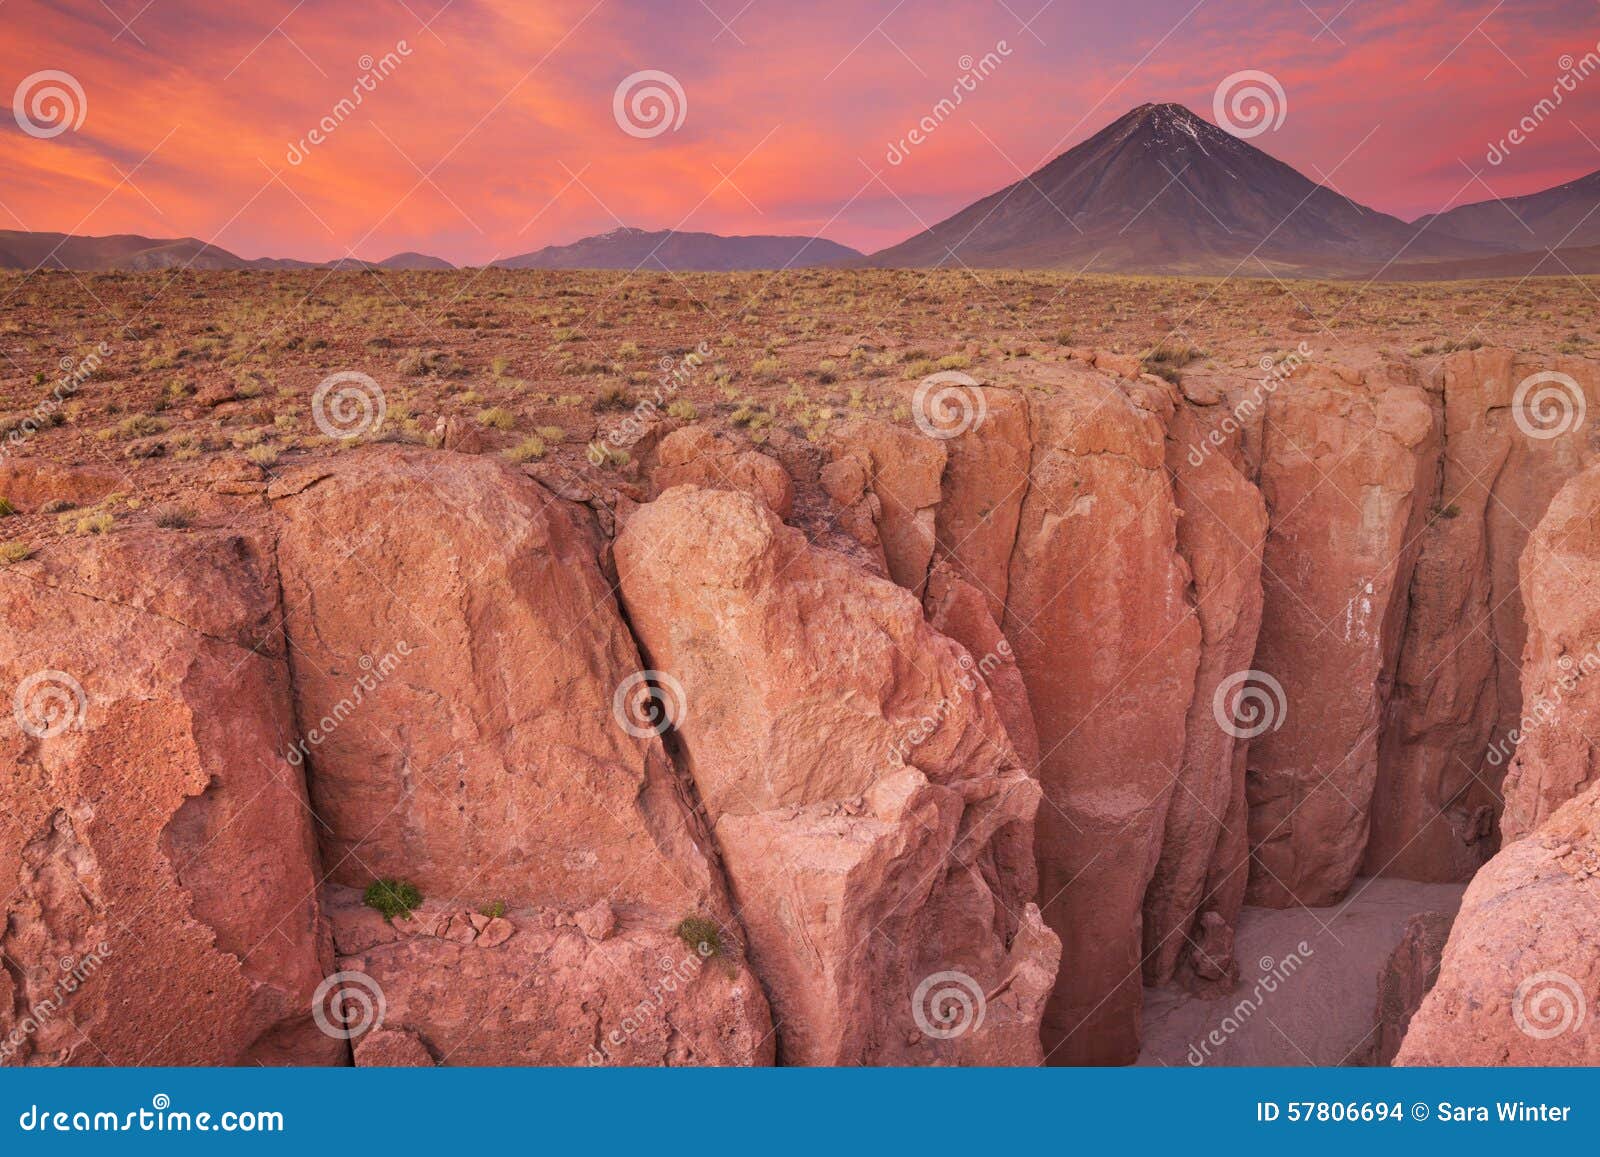 narrow canyon and volcan licancabur, atacama desert, chile at su